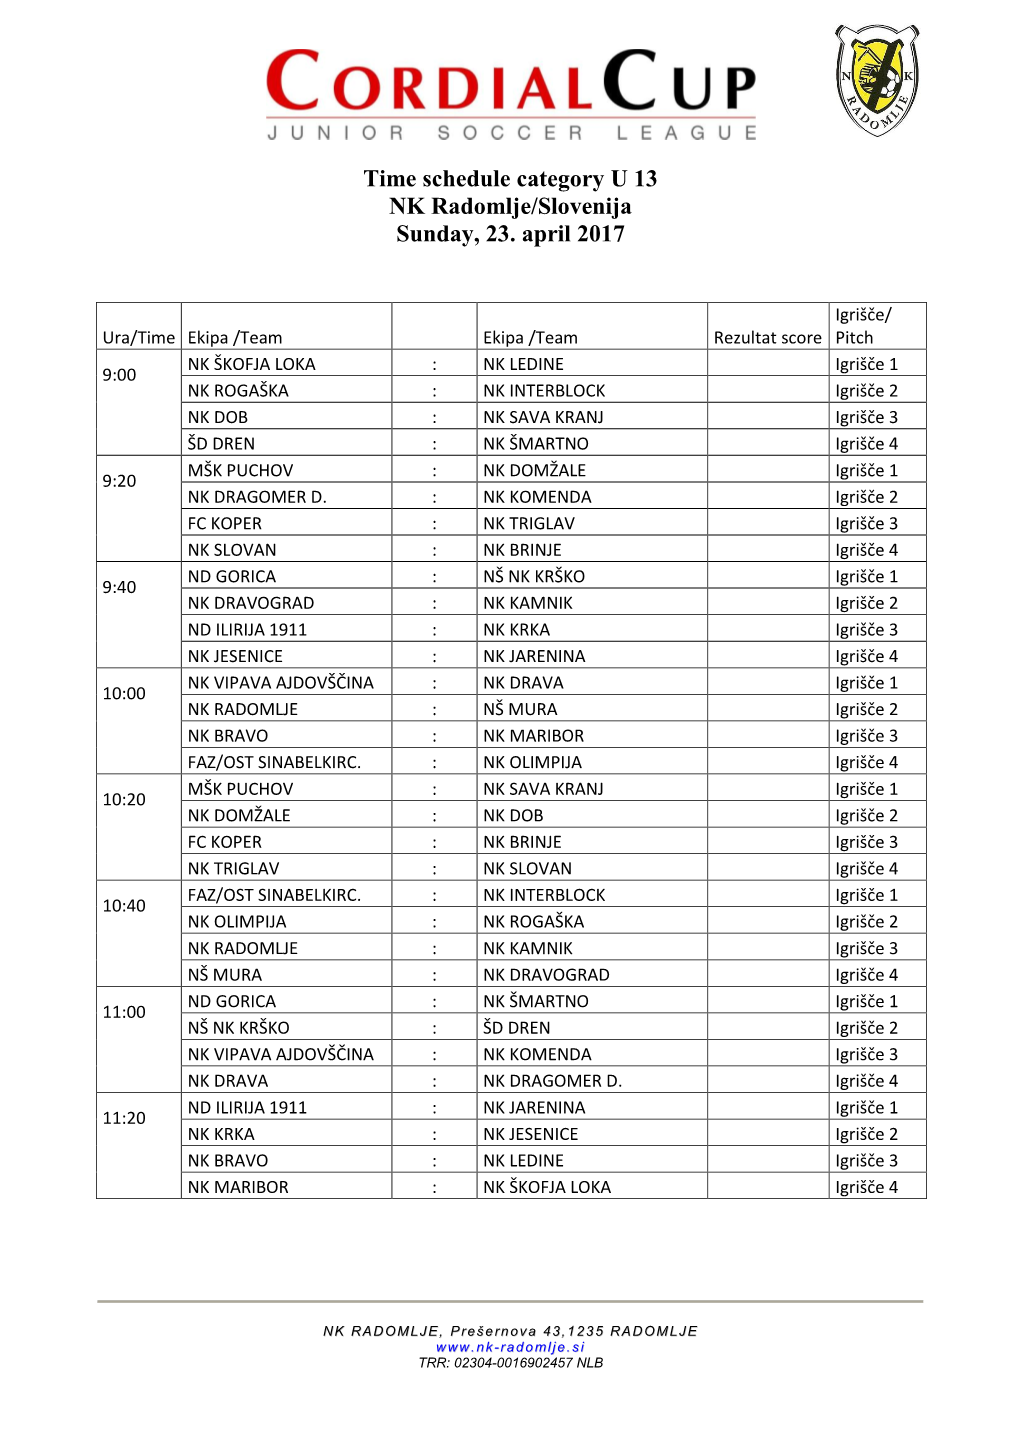 Time Schedule Category U 13 NK Radomlje/Slovenija Sunday, 23